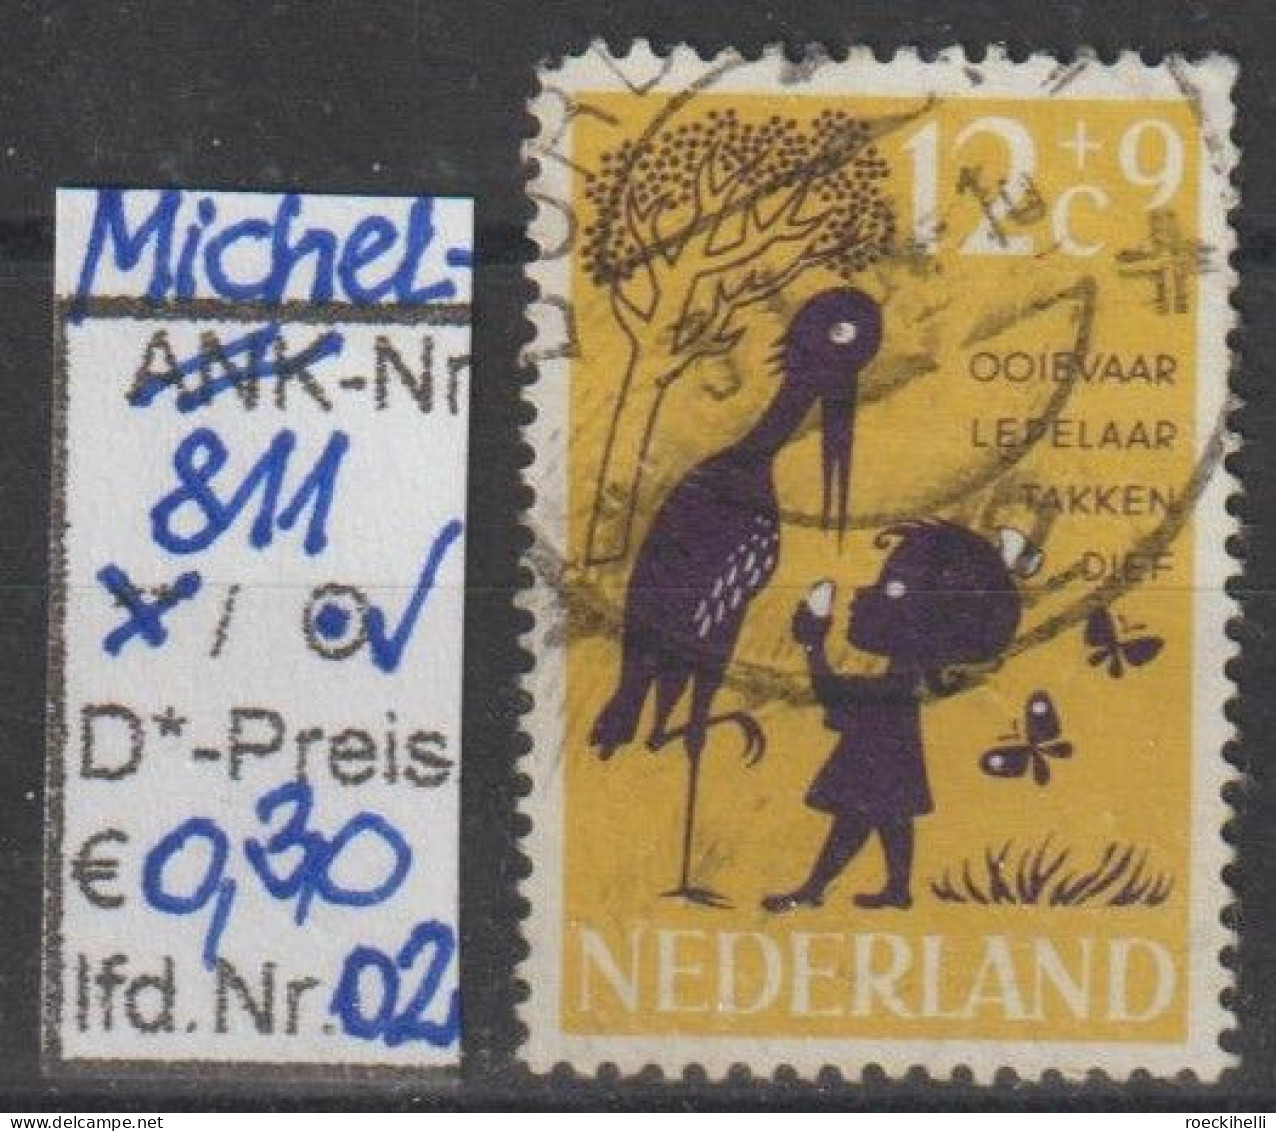 1963 - NIEDERLANDE - SM "Voor Het Kind" 12C+9C Gelb/violett  - O  Gestempelt - S. Scan (811o 01-02 Nl) - Oblitérés